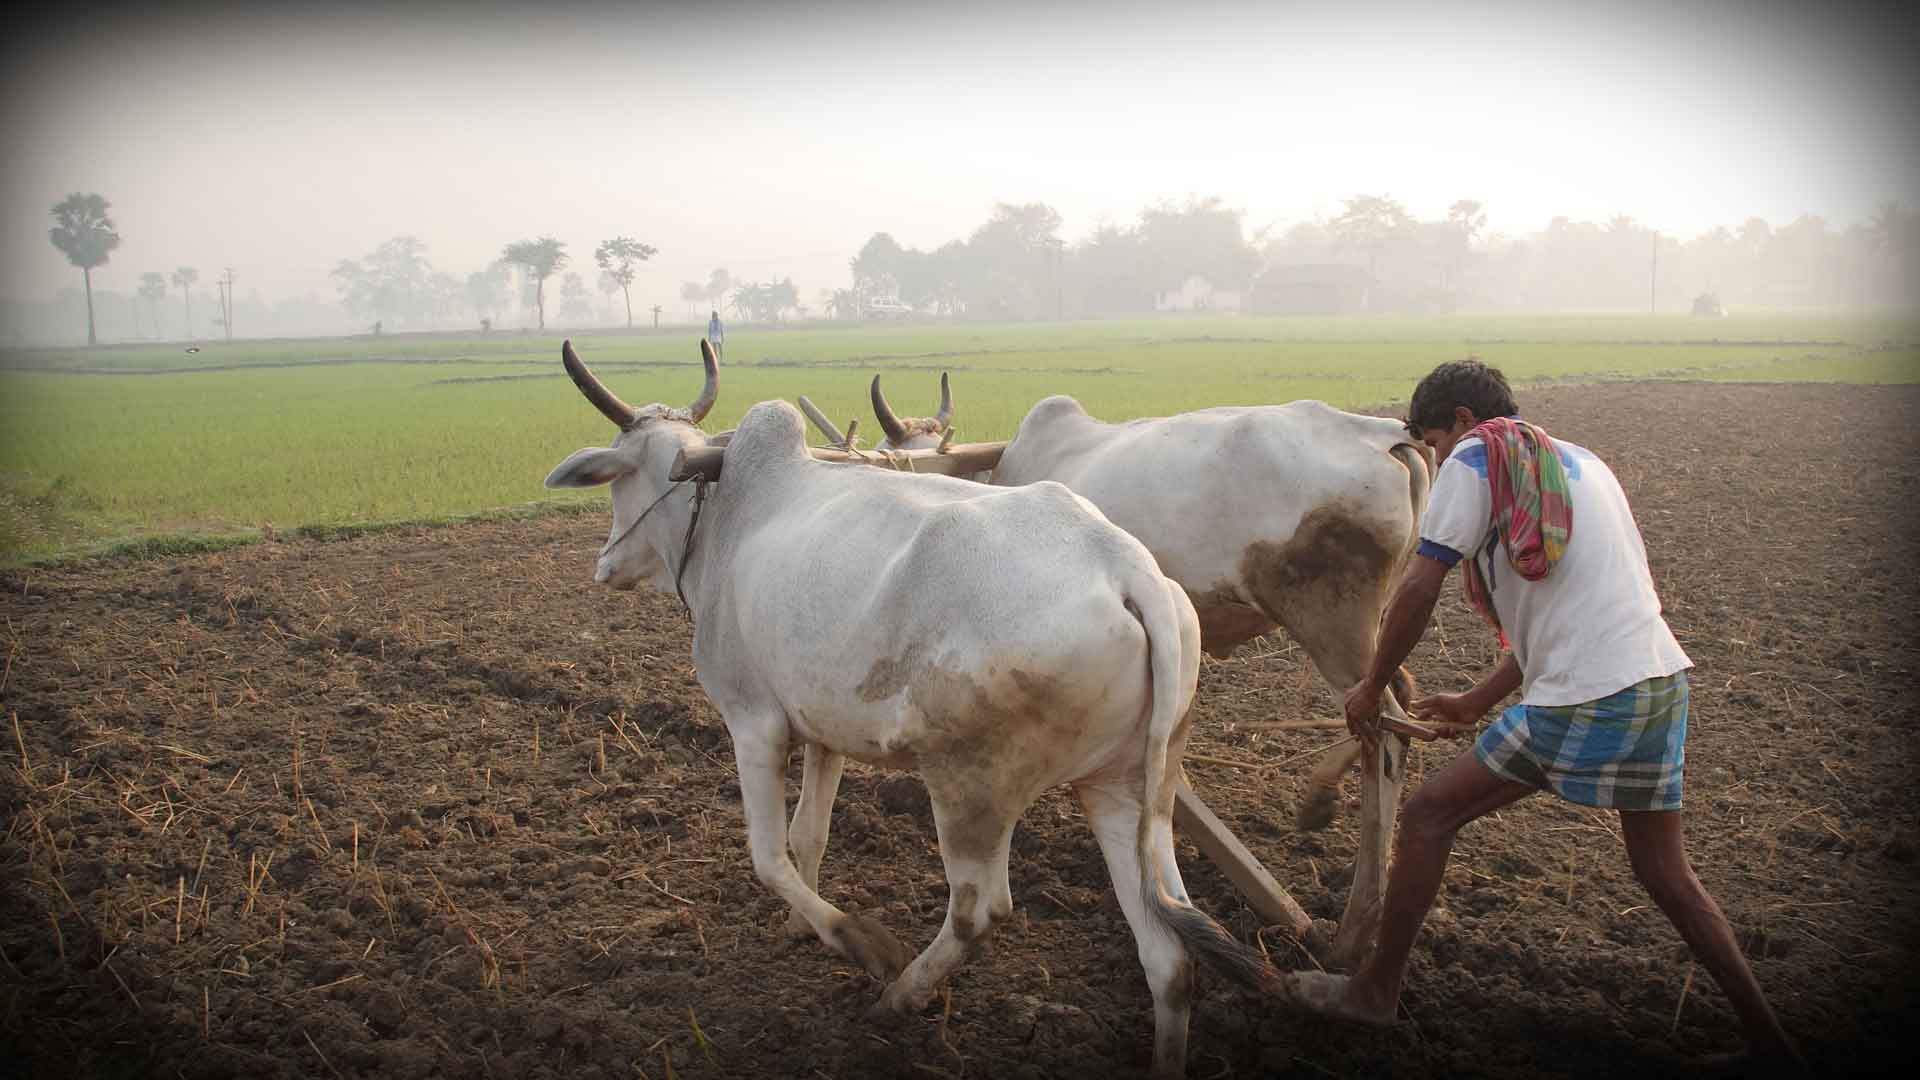 केंद्र सरकारला शेतकऱ्यांना खरंच मदत करायची आहे का?: मिलिंद मुरुंगकर